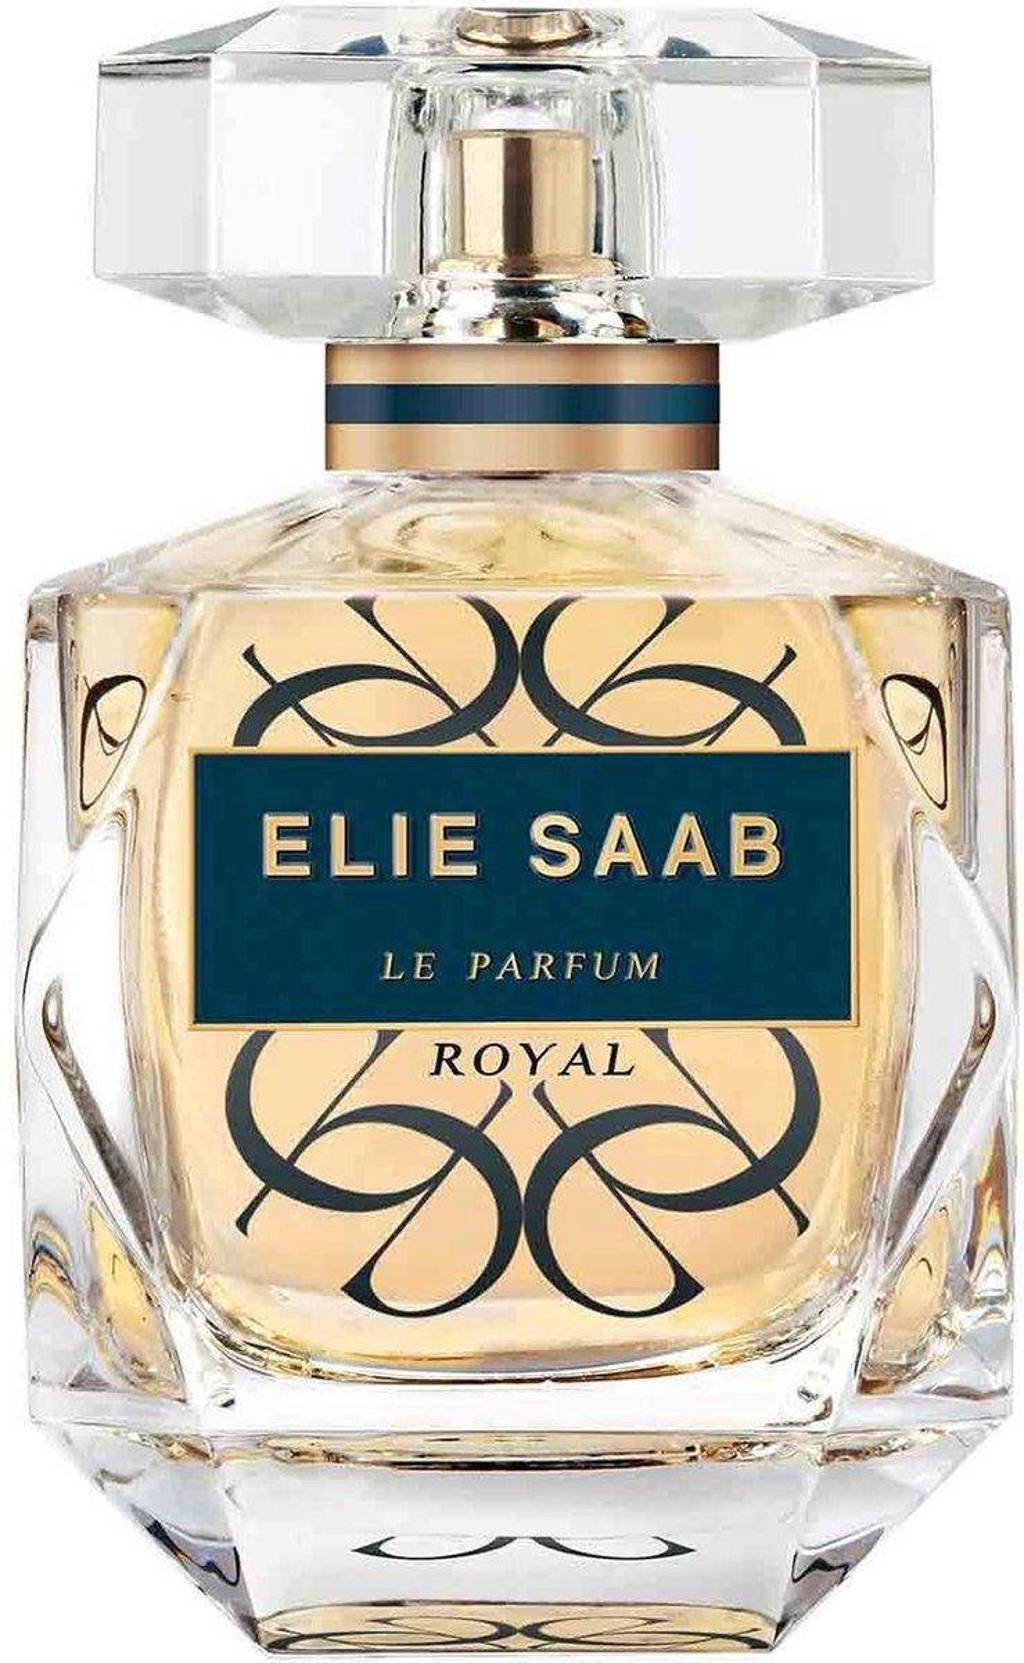 Elie Saab Le Parfum Royal eau de parfum - 90 ml